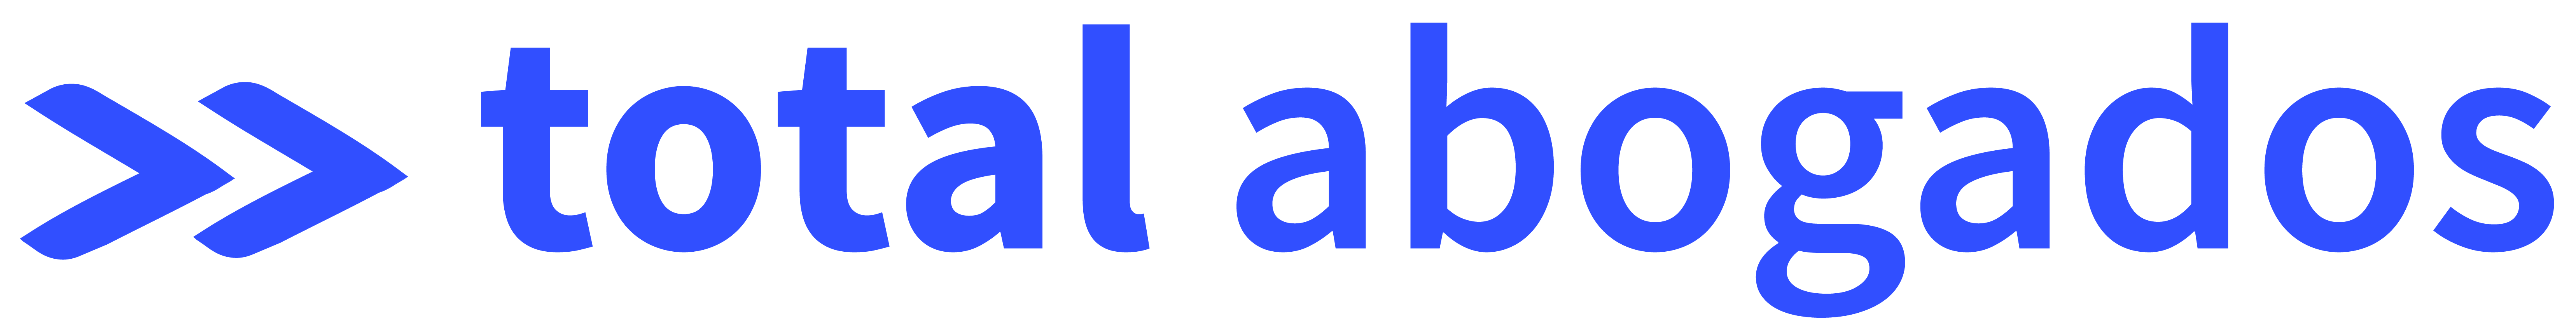 logo_total_abogados_blue